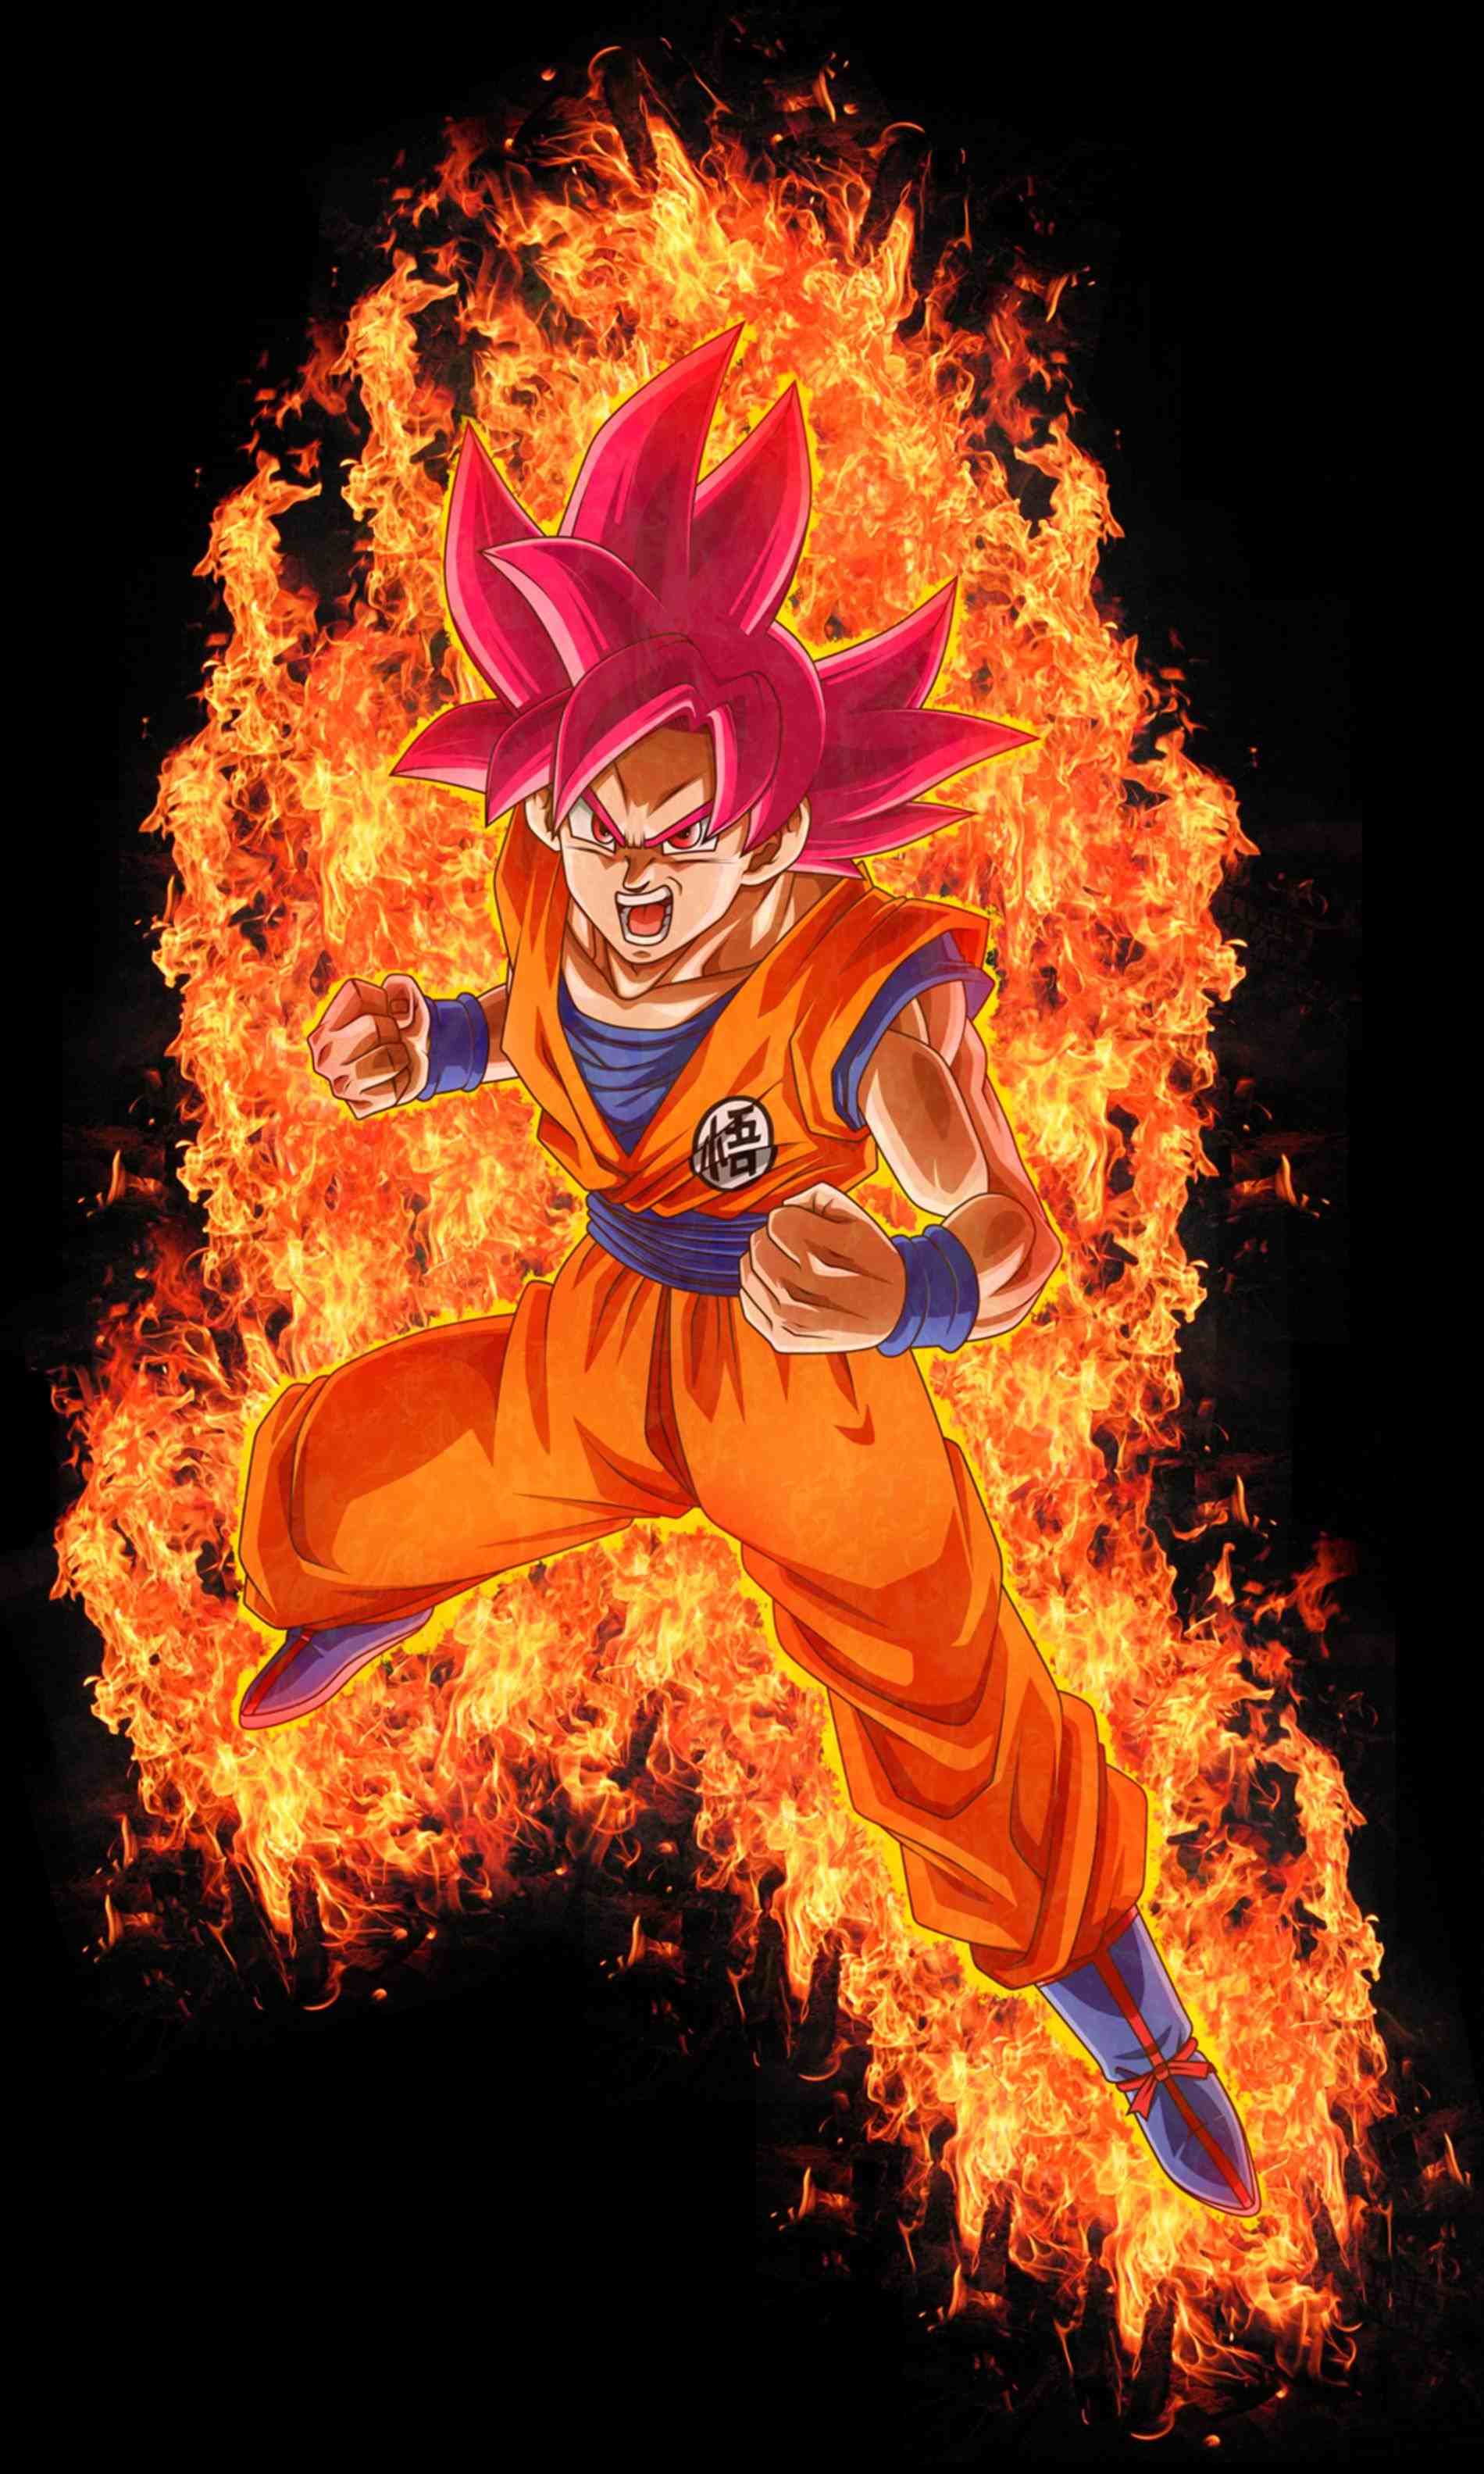 Goku Super Saiyan God Wallpaper, image collections